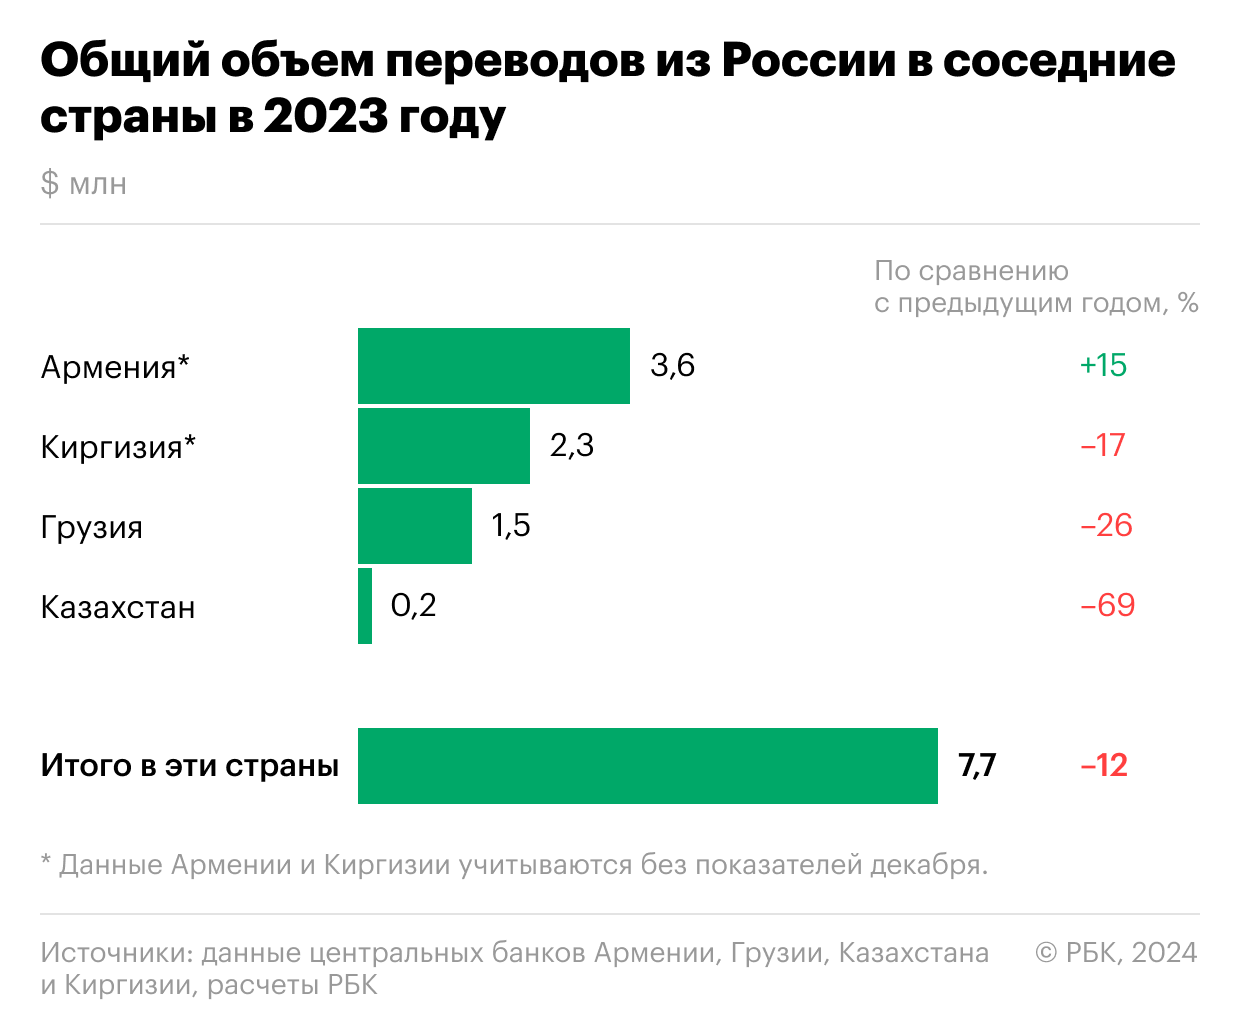 Переводы из России в соседние страны упали после рекордного роста